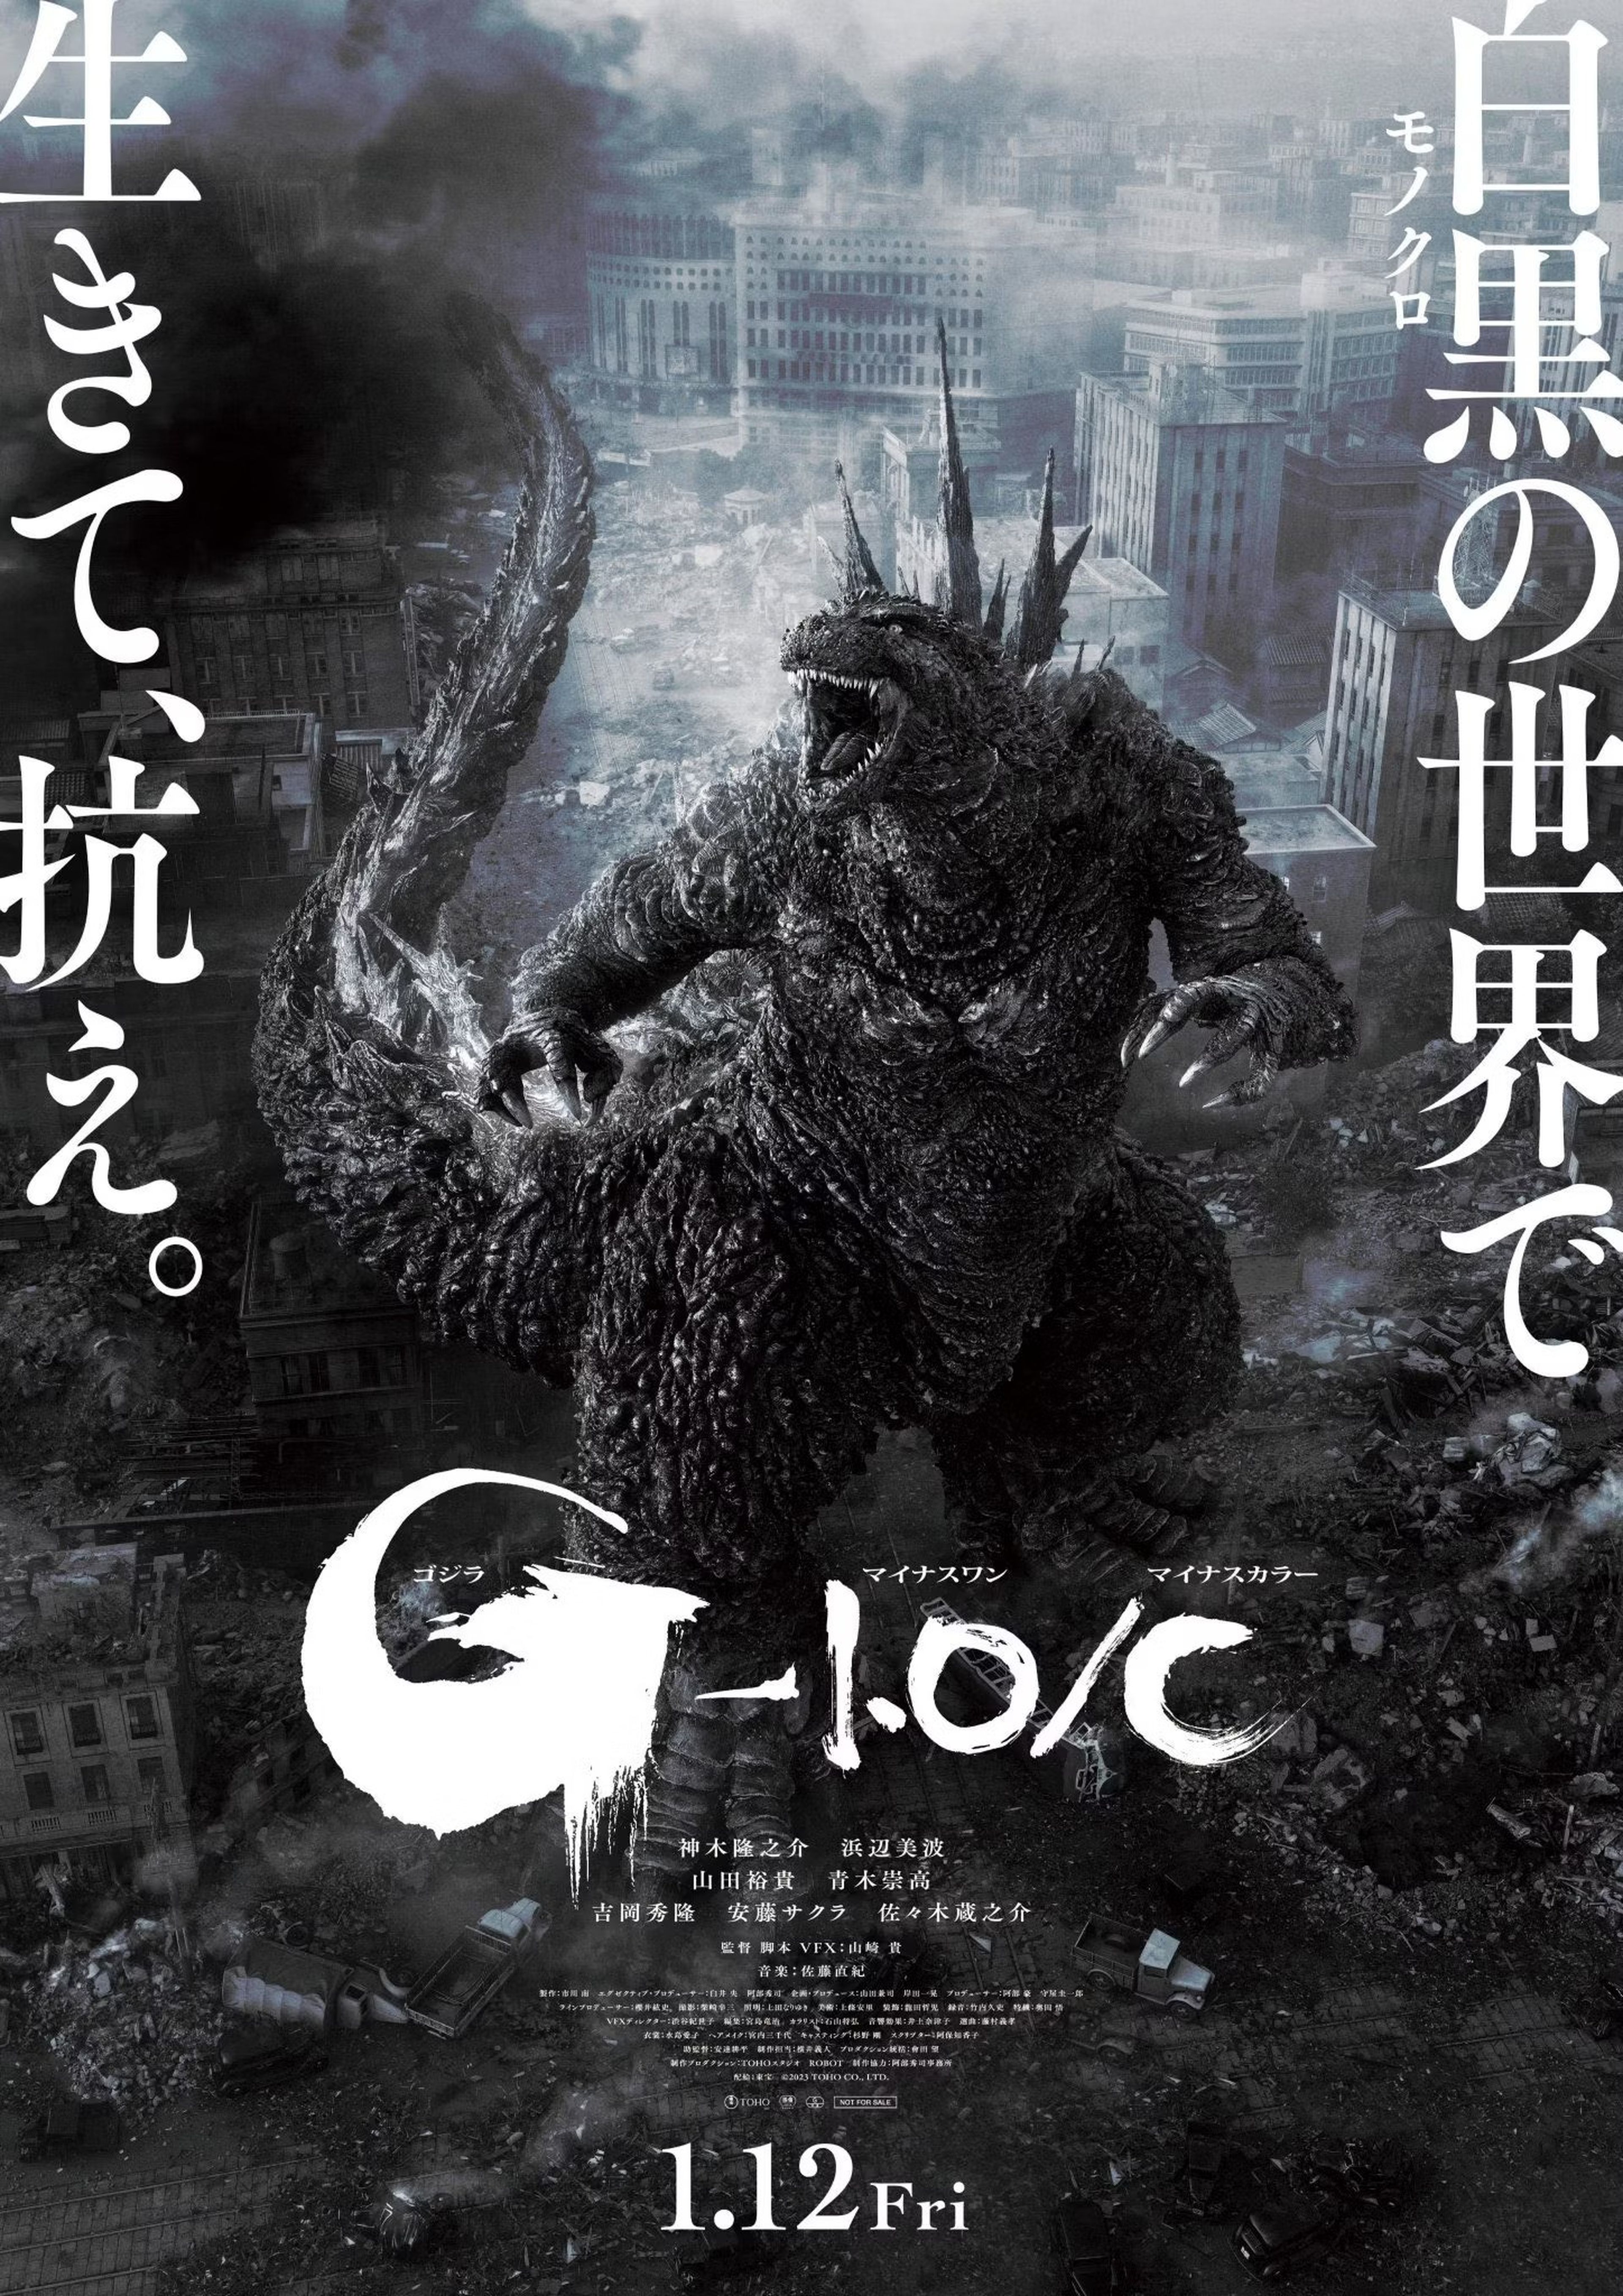 Póster de la versión en blanco y negro de Godzilla: Minus One